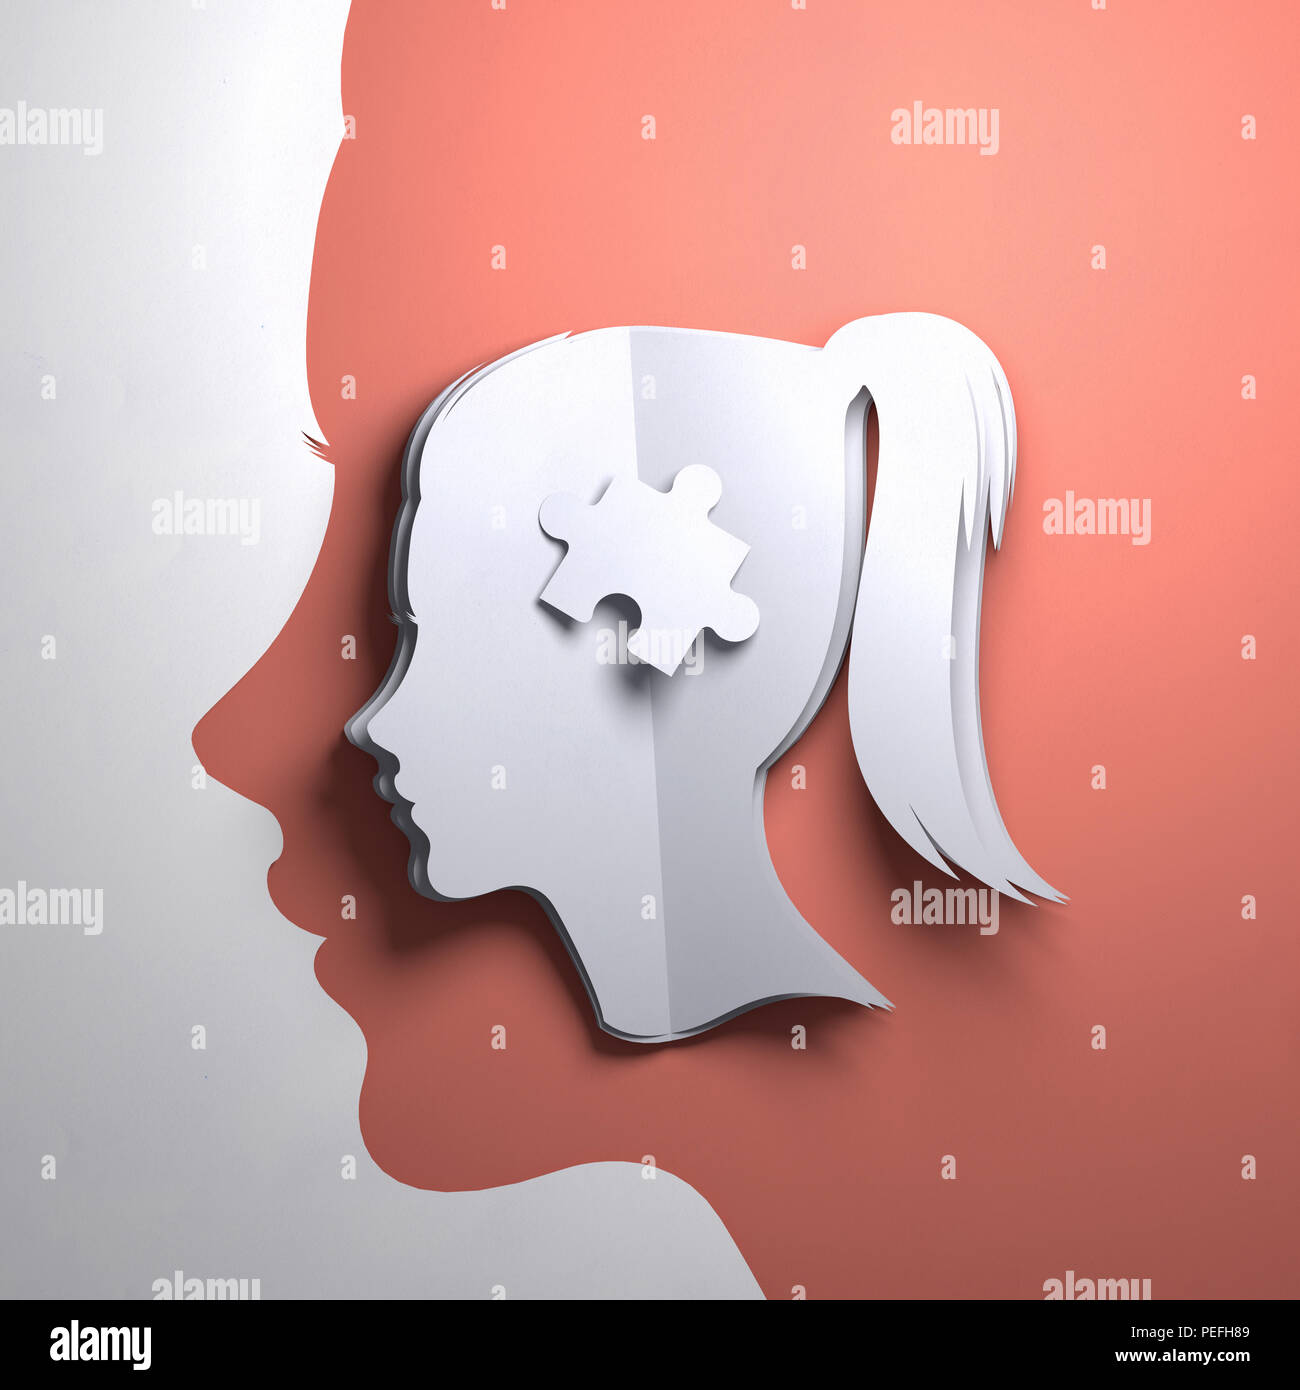 Papier plié origami. La silhouette d'une tête de femme avec une pièce du puzzle. Mindfulness conceptuel 3D illustration. Banque D'Images